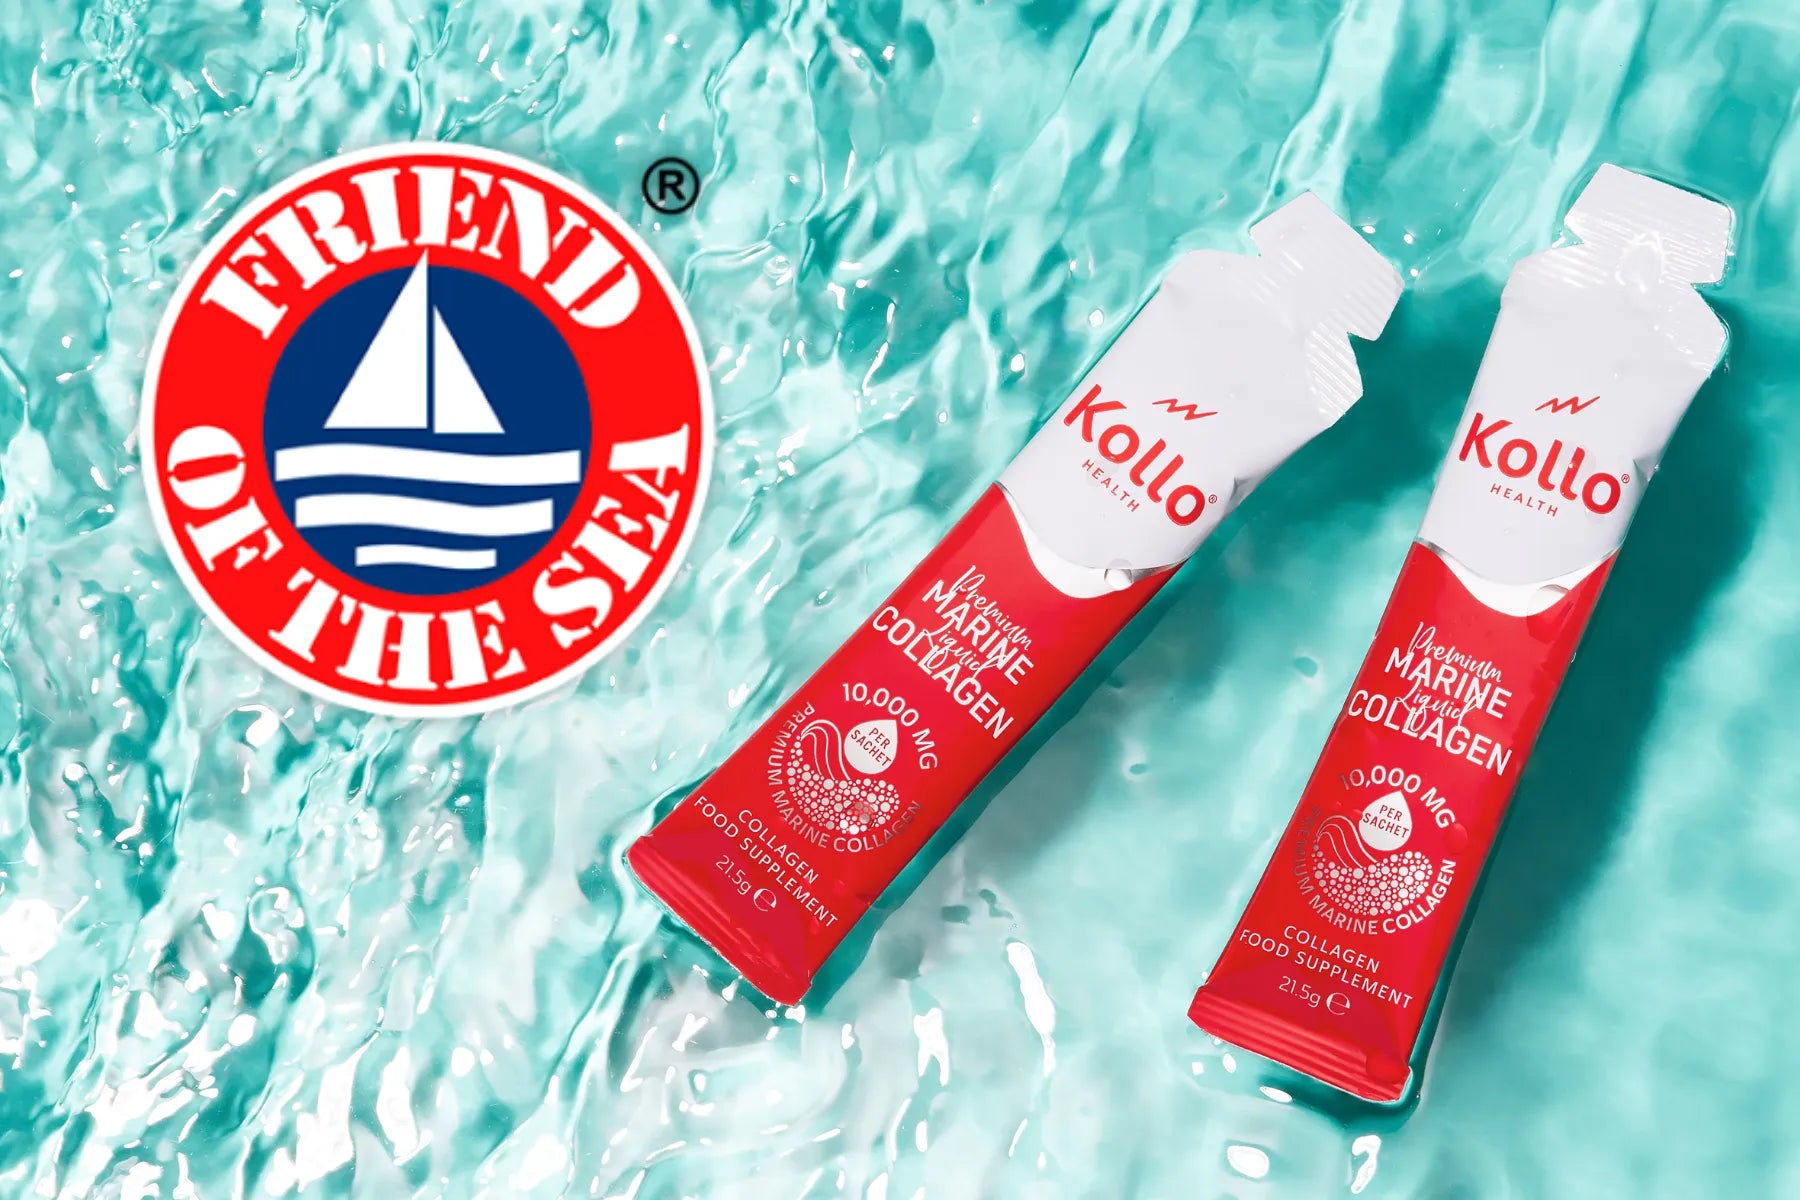 ‘Friend Of The Sea’ Certification for Kollo Health’s Collagen Peptides